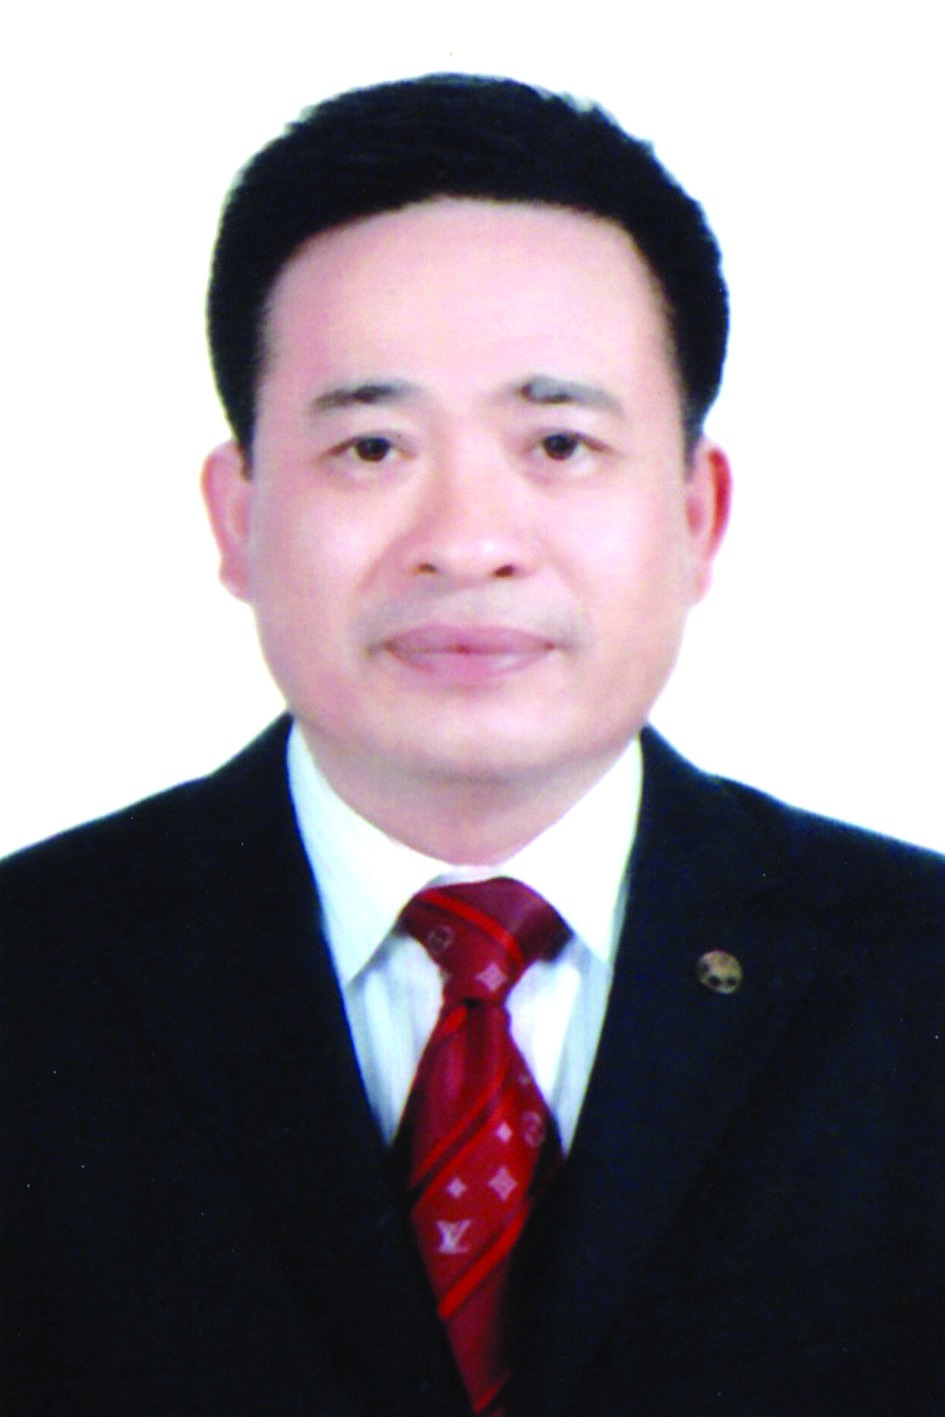 Chương trình hành động của ông Vũ Mạnh Hải, ứng cử viên đại biểu HĐND TP Hà Nội nhiệm kỳ 2021 - 2026 - Ảnh 1